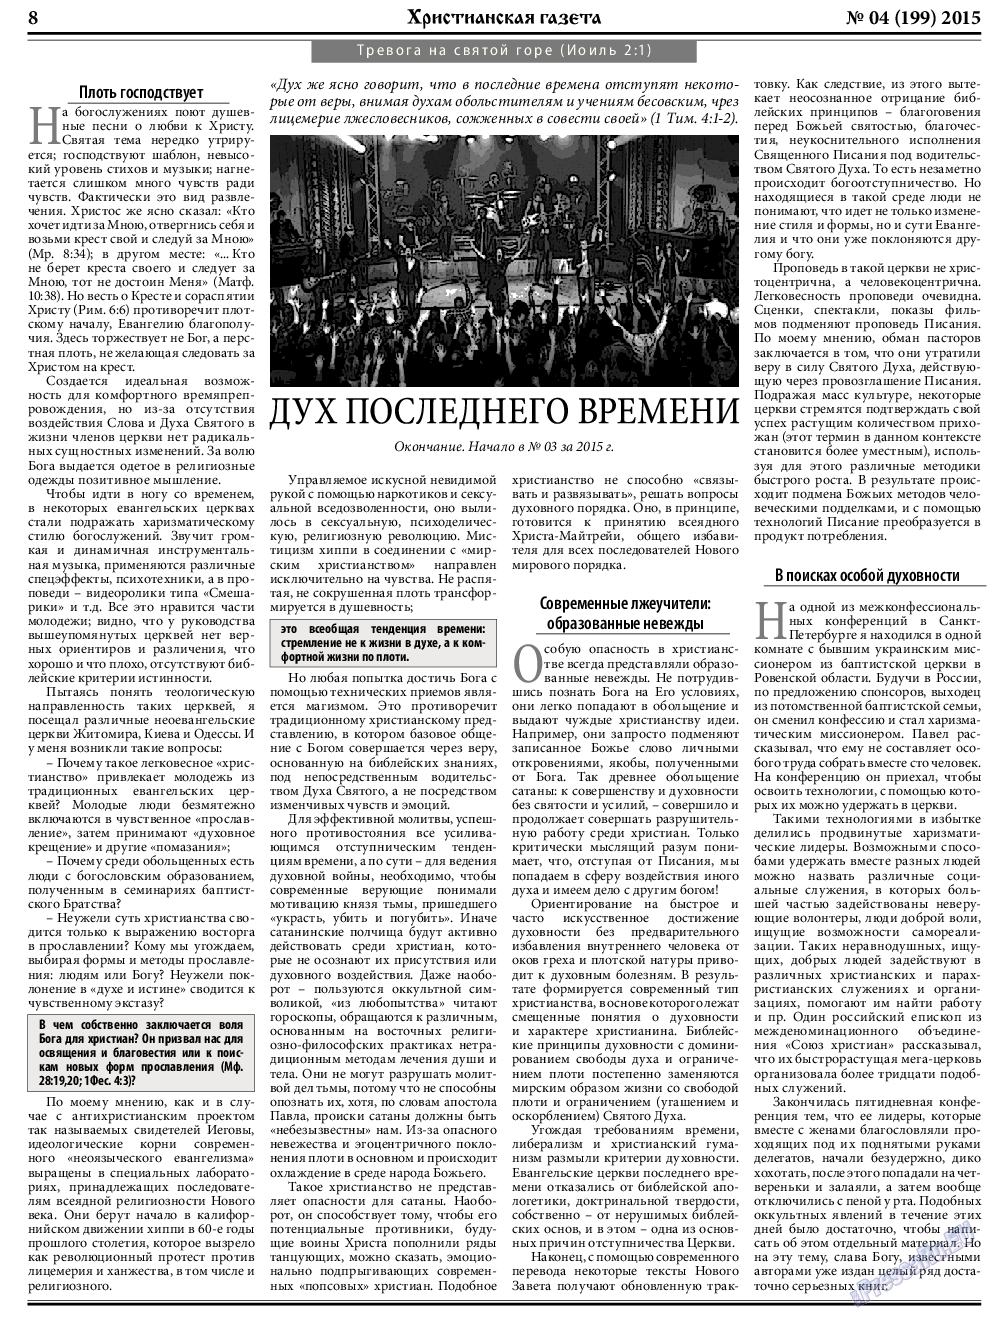 Христианская газета, газета. 2015 №4 стр.8